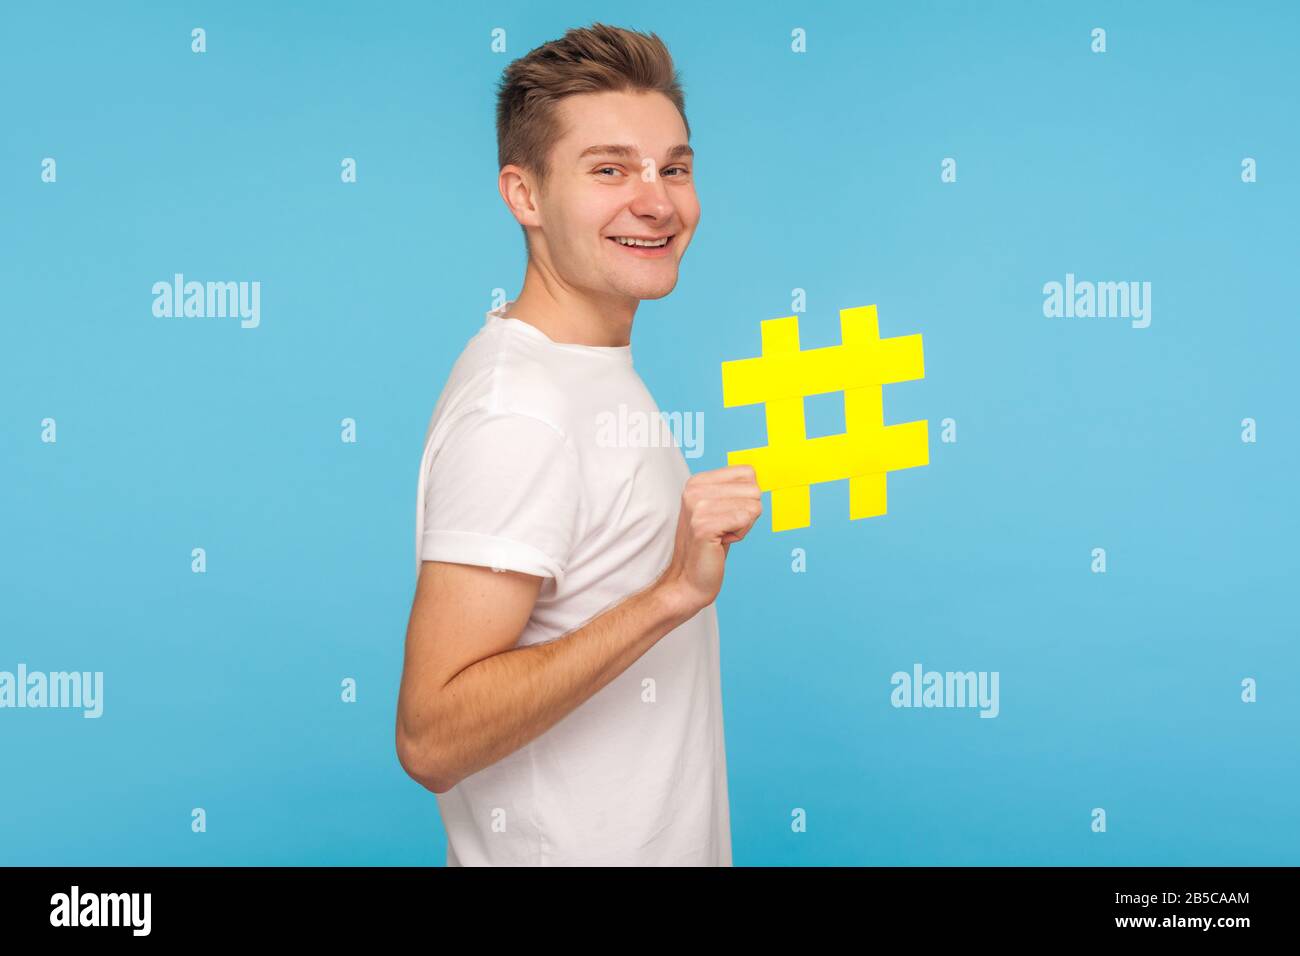 Tendances Internet. Profil de l'homme drôle heureux dans le t-shirt tenant le grand symbole de hashtag jaune et souriant, montrant le signe de hachage du sujet viral des médias sociaux. I Banque D'Images